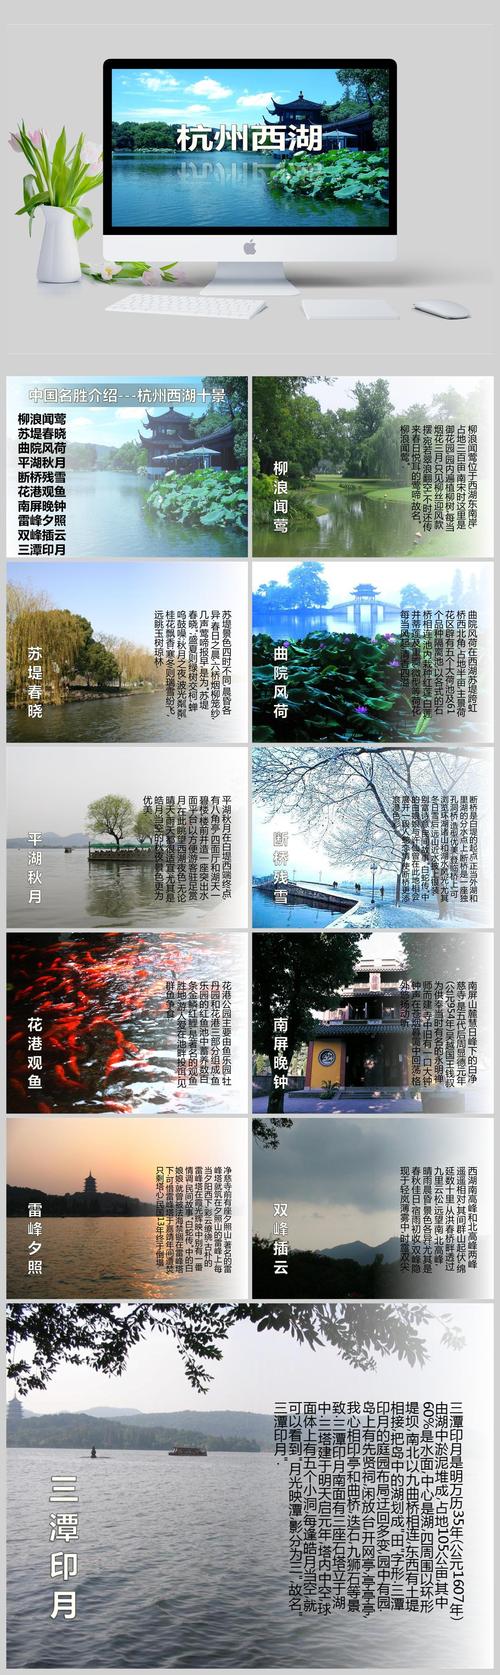 杭州风景区介绍-图1